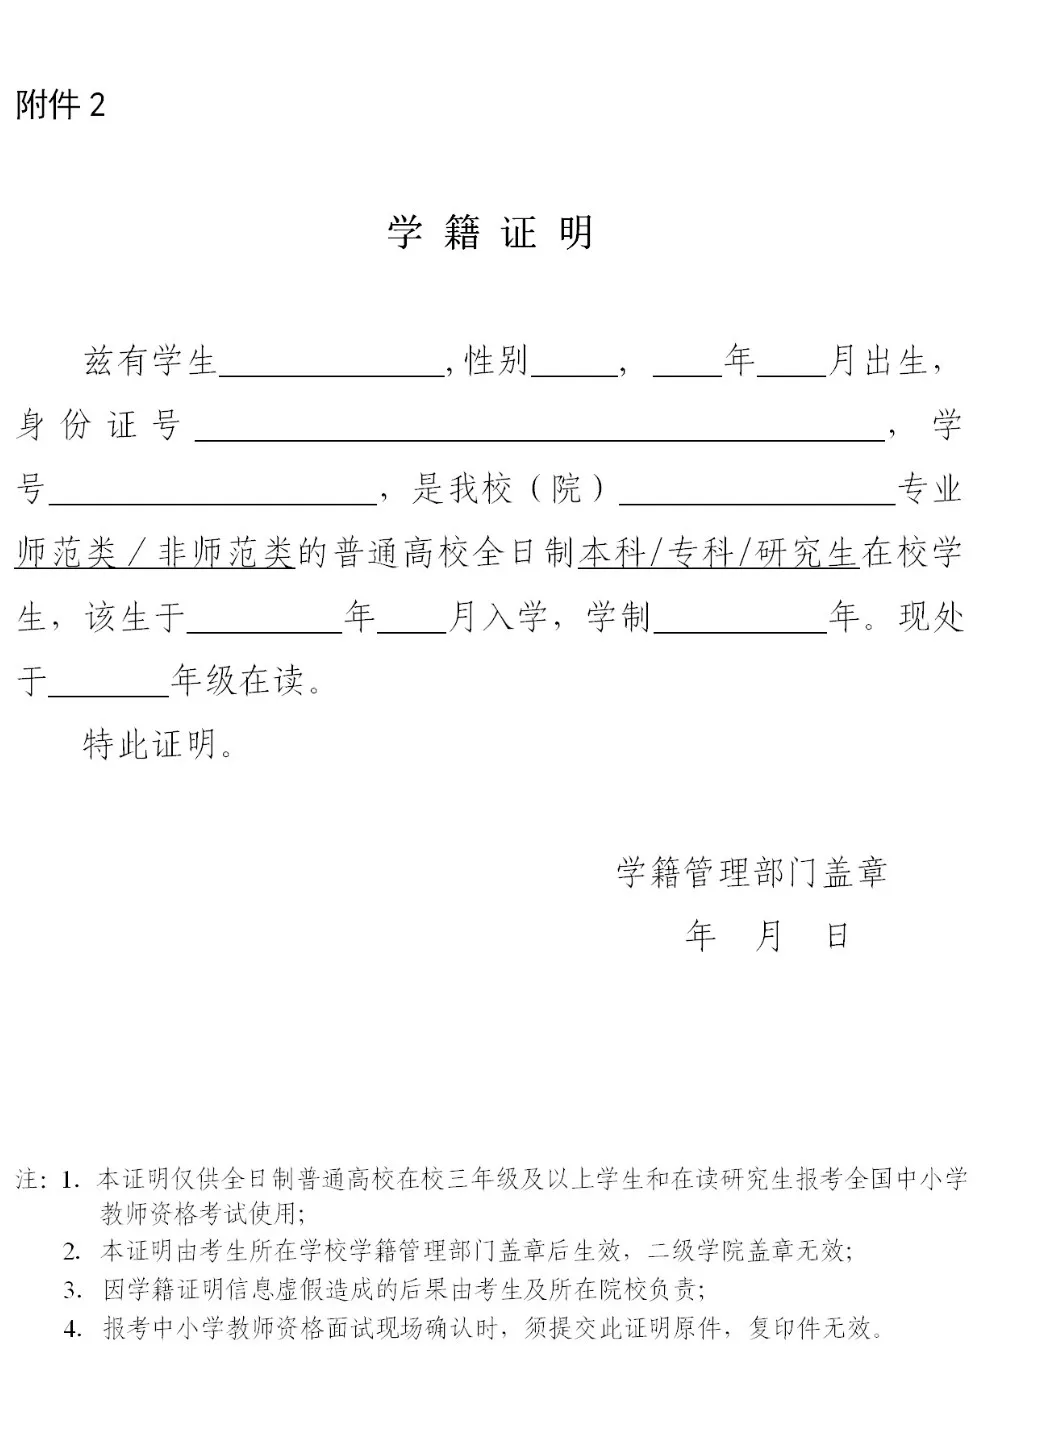 2021年下半年陕西省中小学教师资格考试面试公告